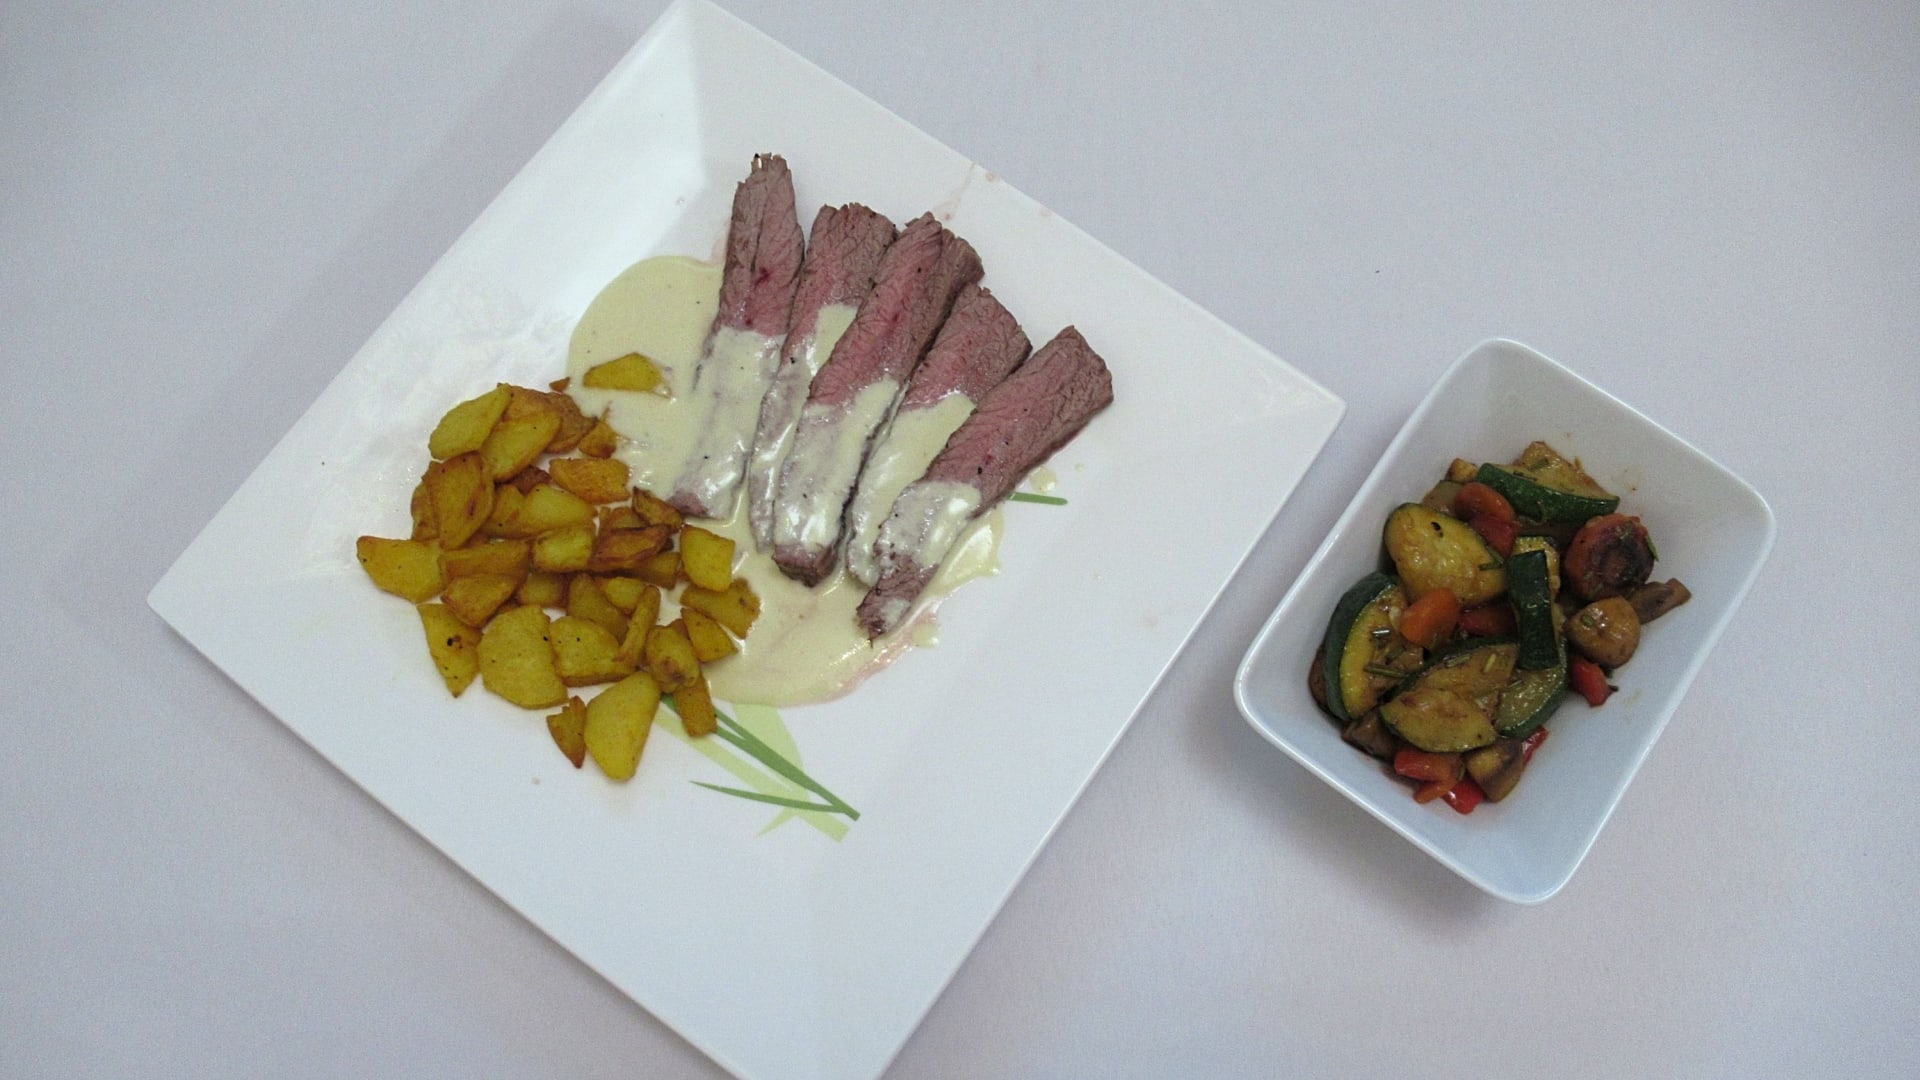 Hovězí flank steak s pepřovou omáčkou, opečené brambory, grilovaná zelenina